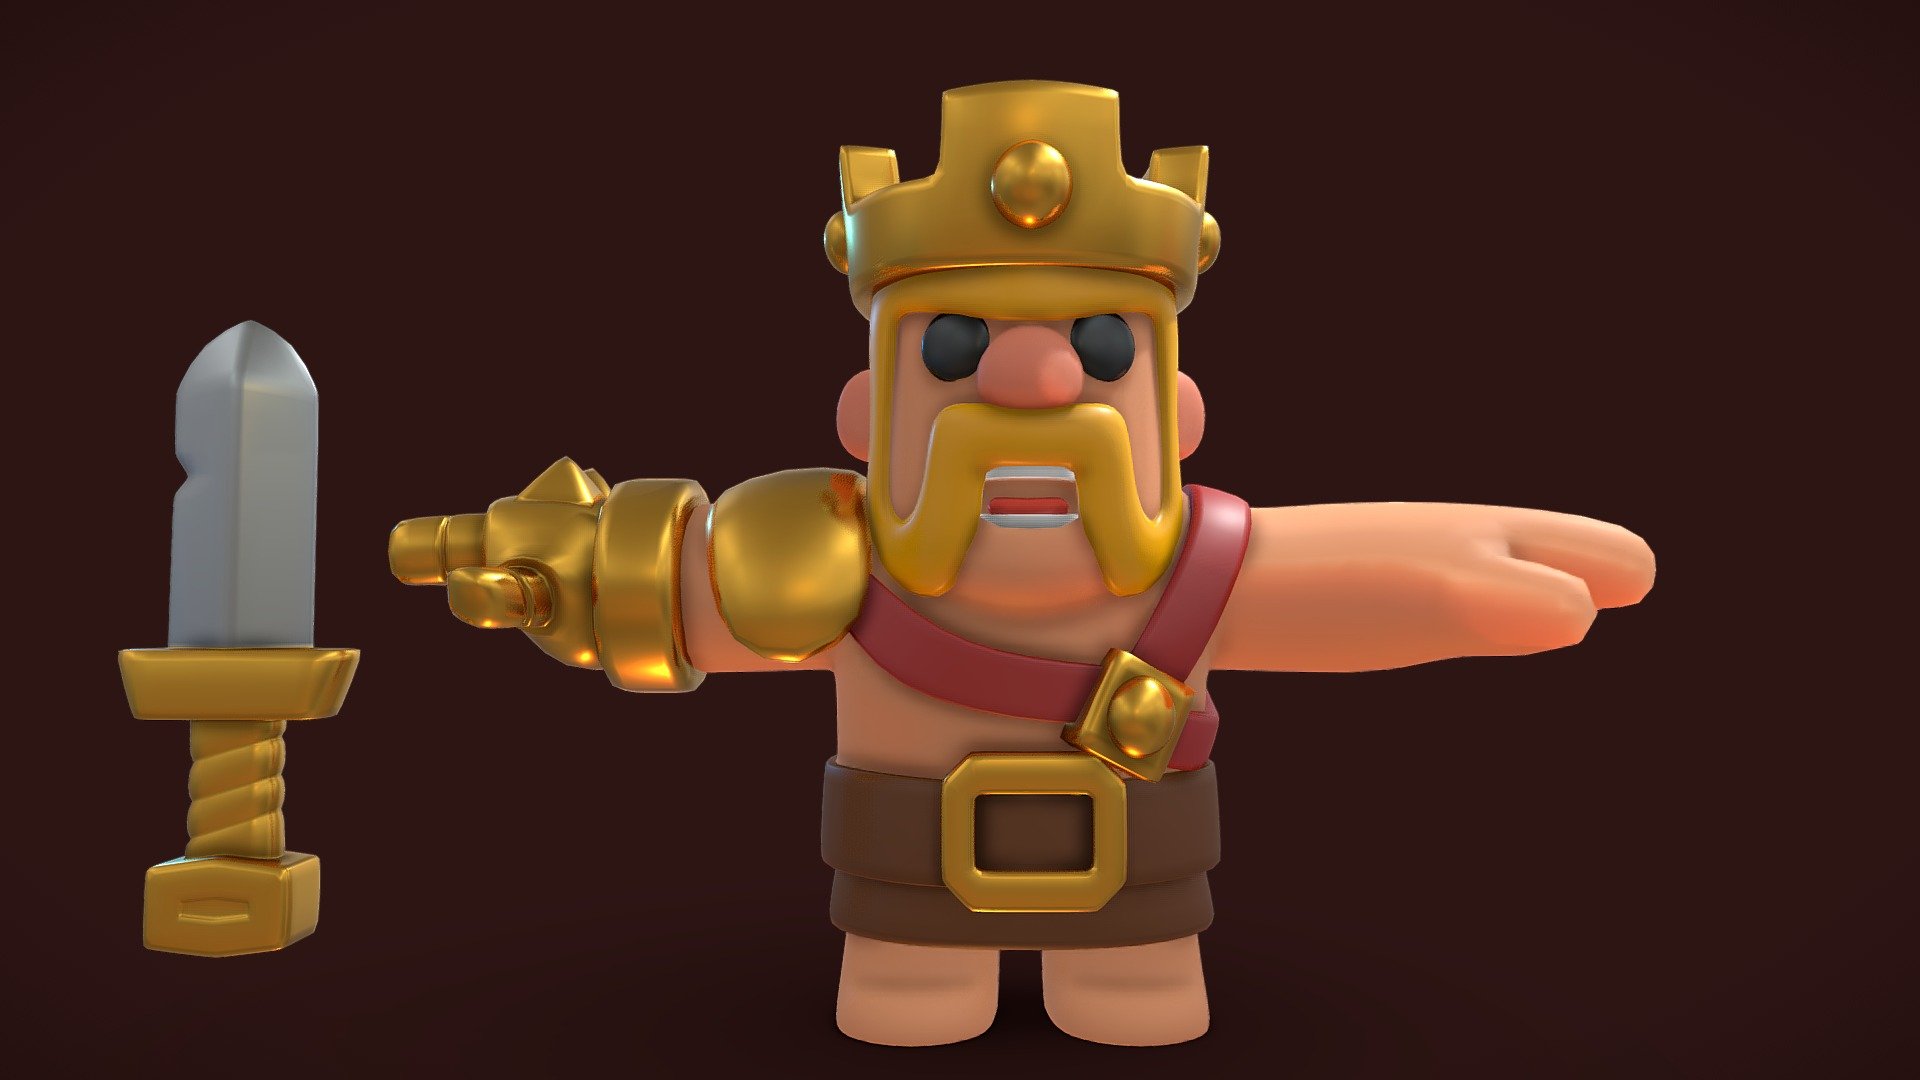 Clash Mini Barbarian King